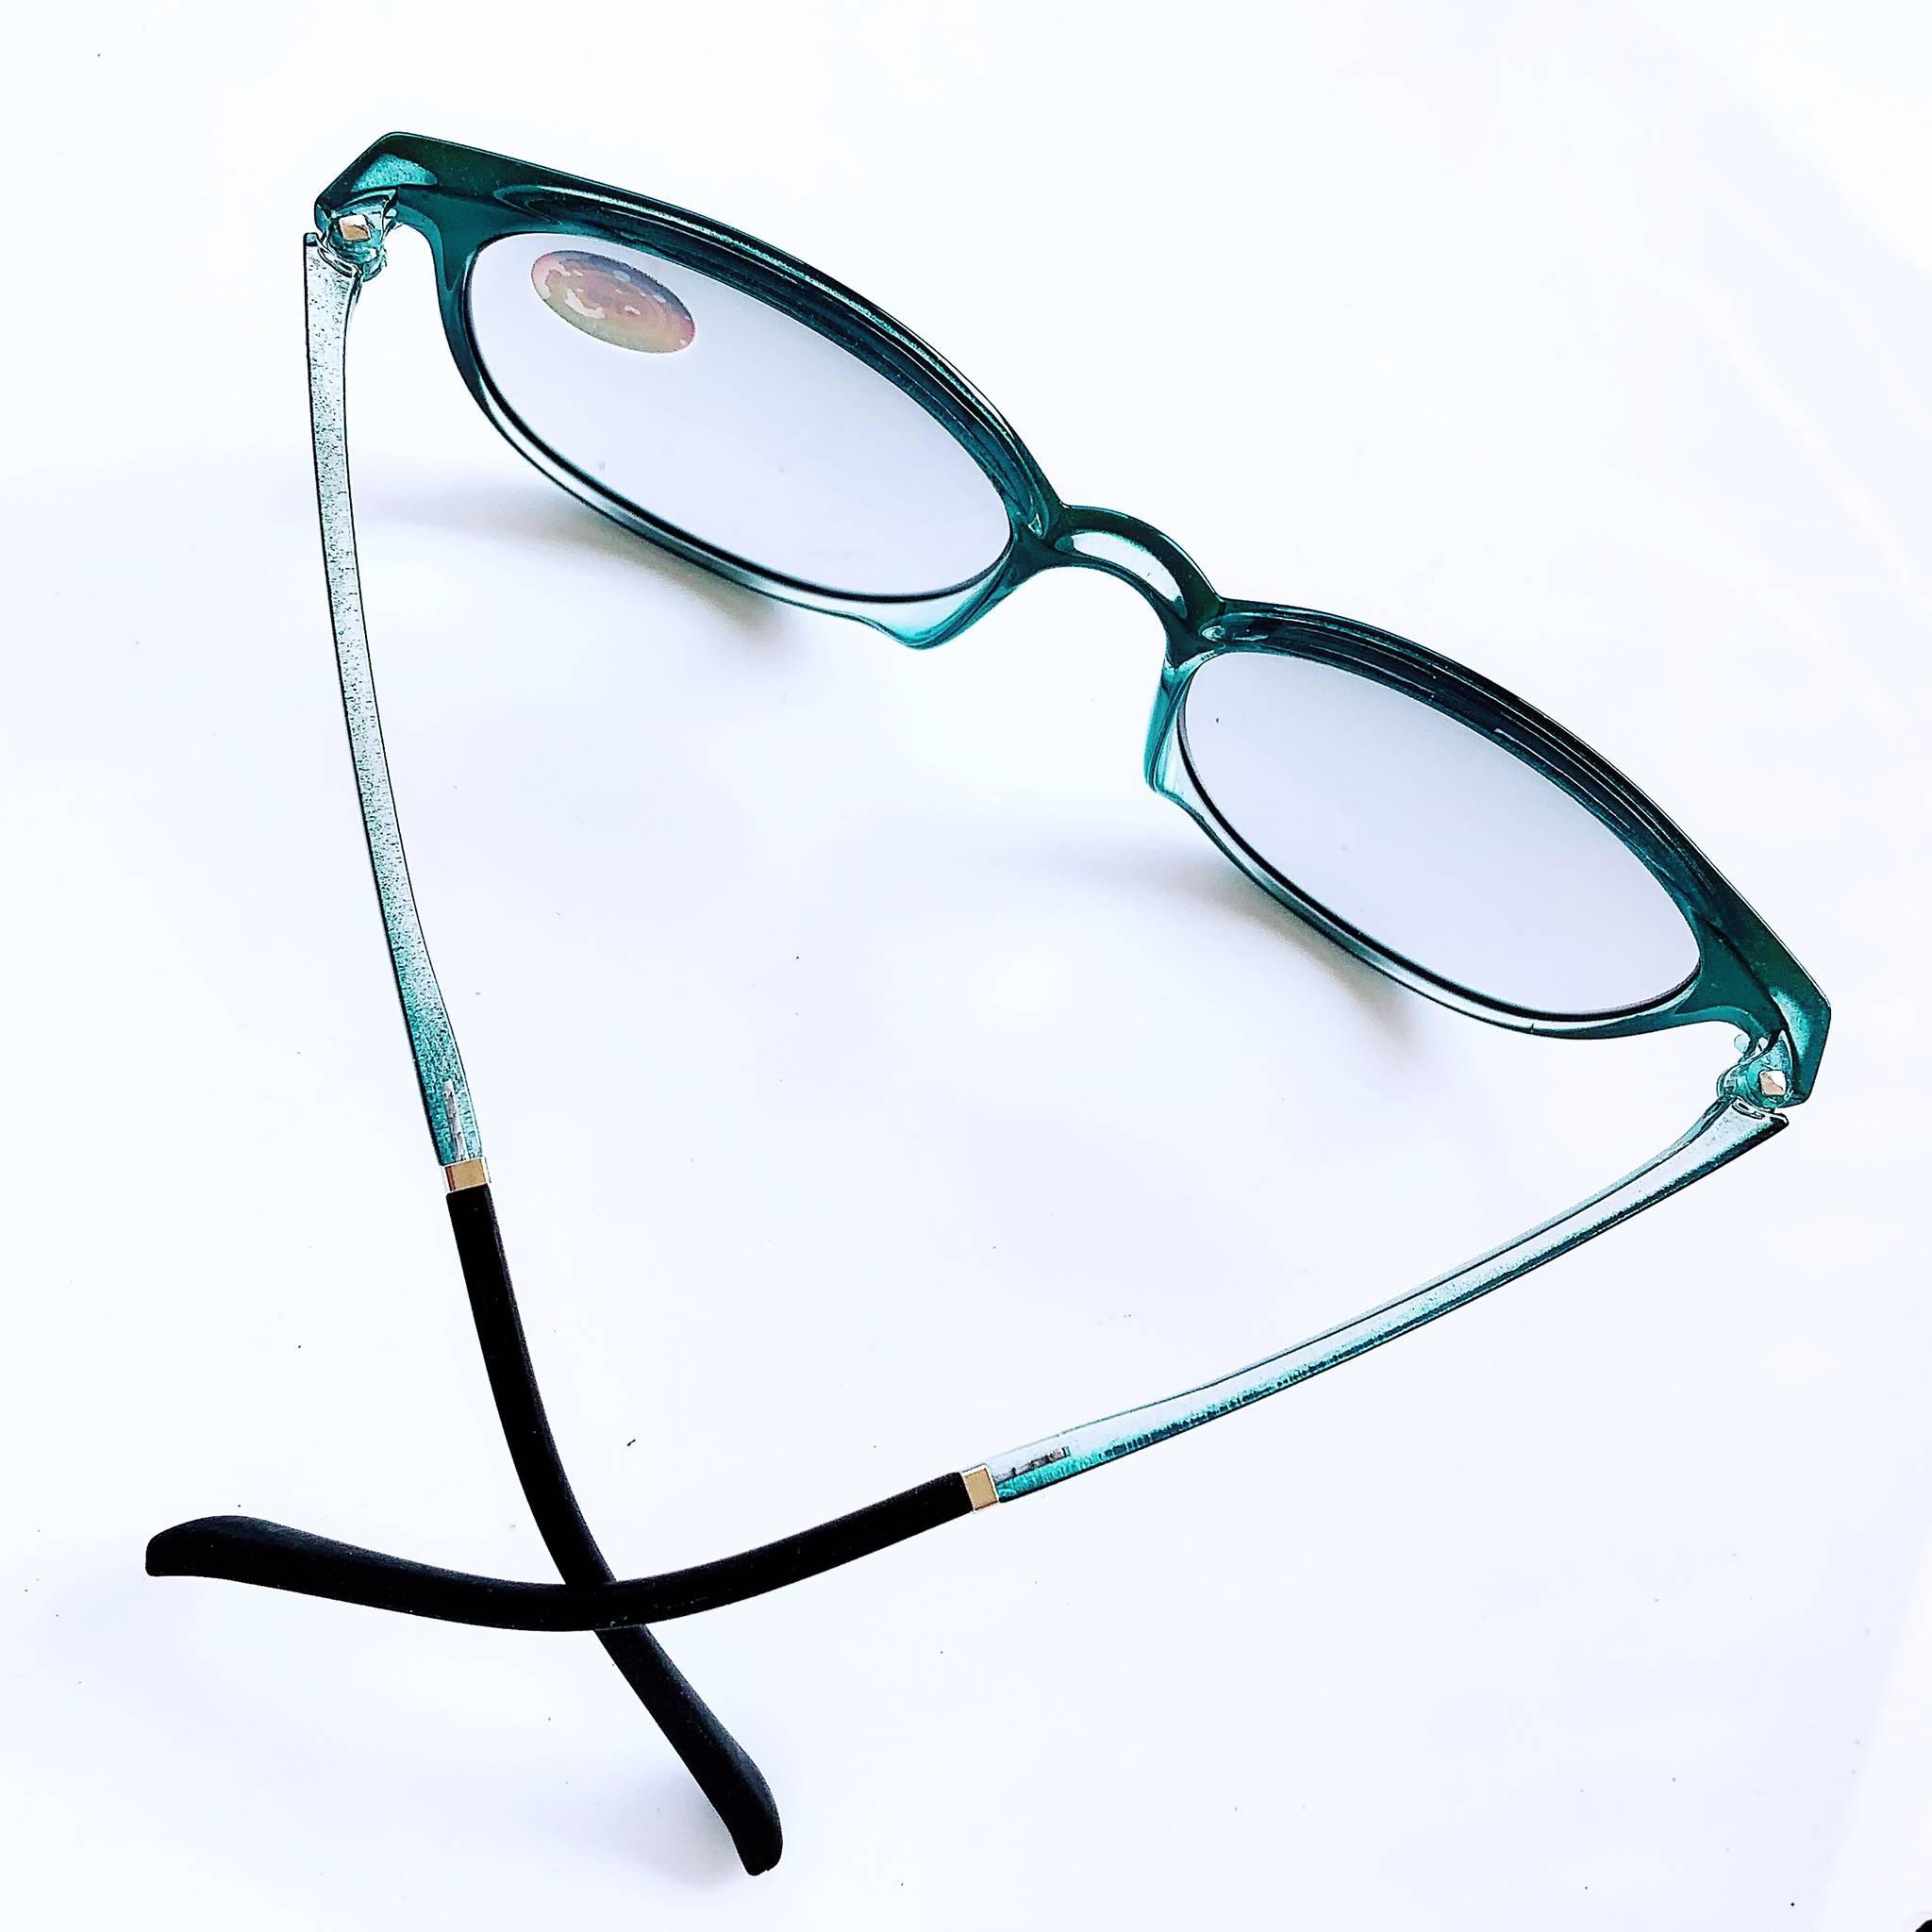 ภาพที่ให้รายละเอียดเกี่ยวกับ แว่นตาออโต้เลนส์ ปรับสีเข้มขึ้นโดยอัตโนมัติ แว่นสายตายาว แว่นสายตาสั้น กรอบสีดำล้วน ทรงรี แว่นตา น้ำหนักเบามาก  แถม ซอง + ผ้าเช็ดเลนส์